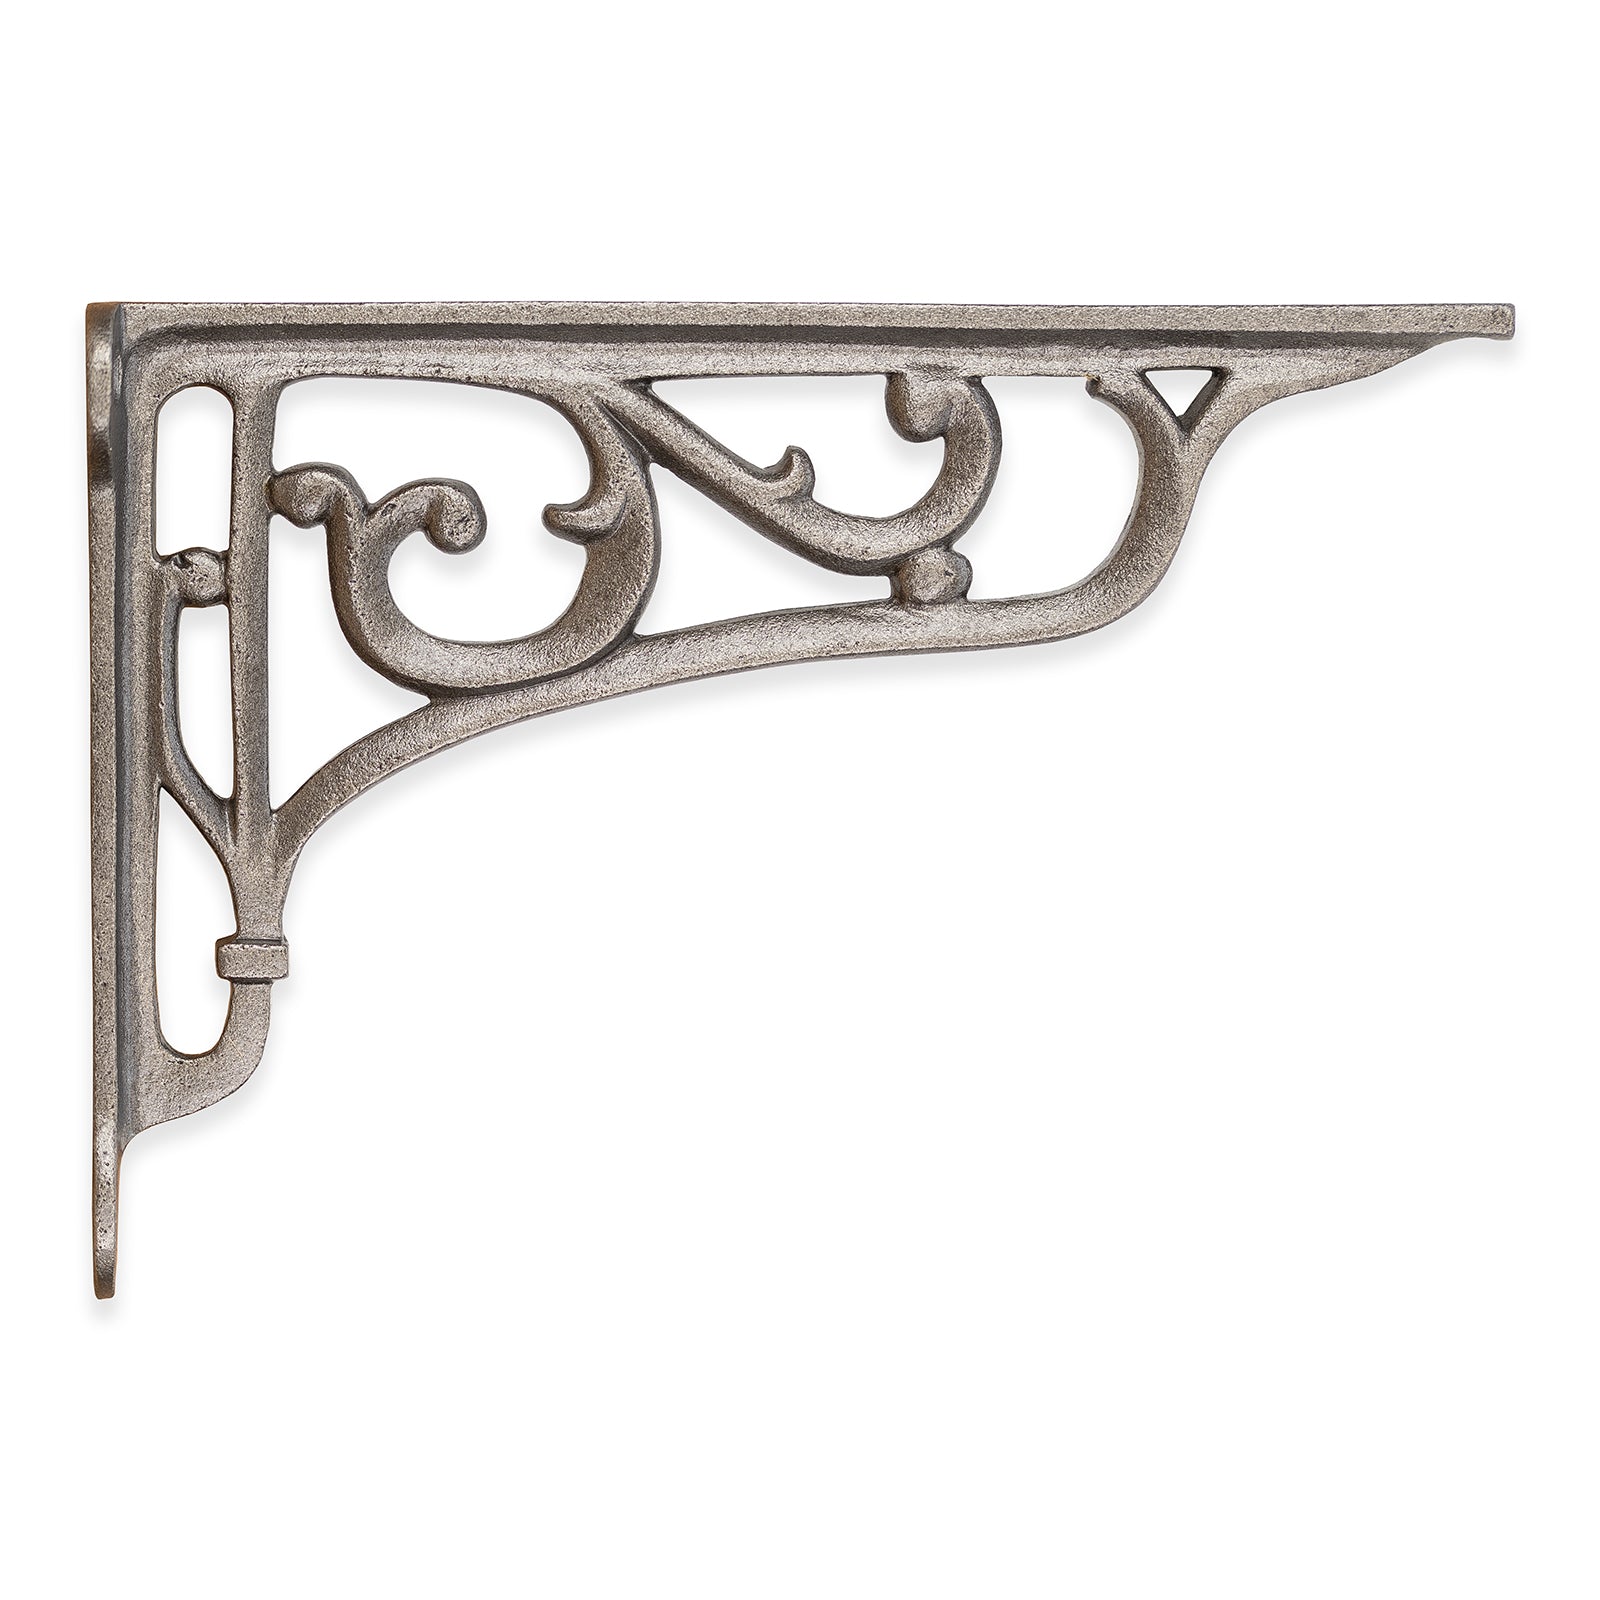 old iron shelf brackets, als known as Victorian cast iron shelf bracket